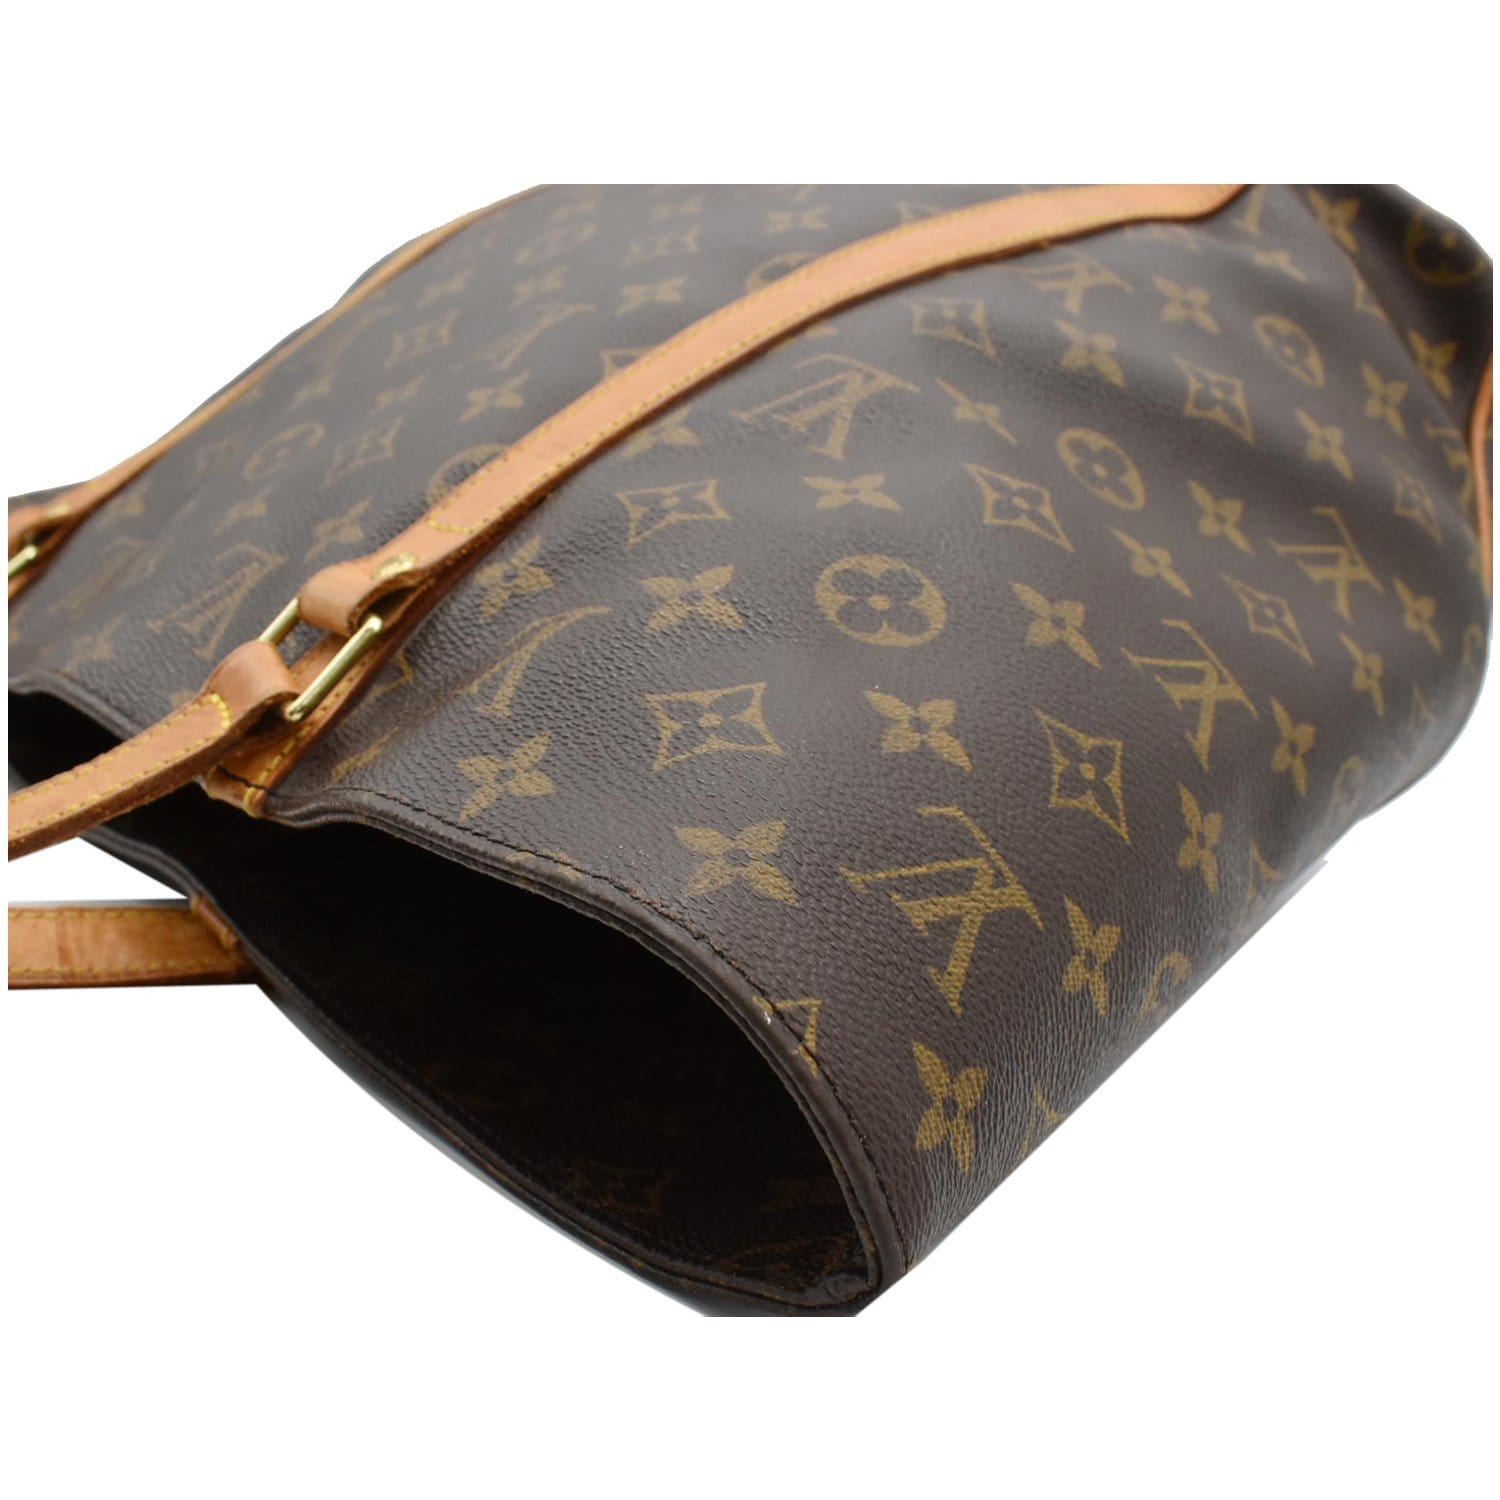 Louis Vuitton, Bags, Authentic Louis Vuitton Luco Tote Monogram Brown  Canvas